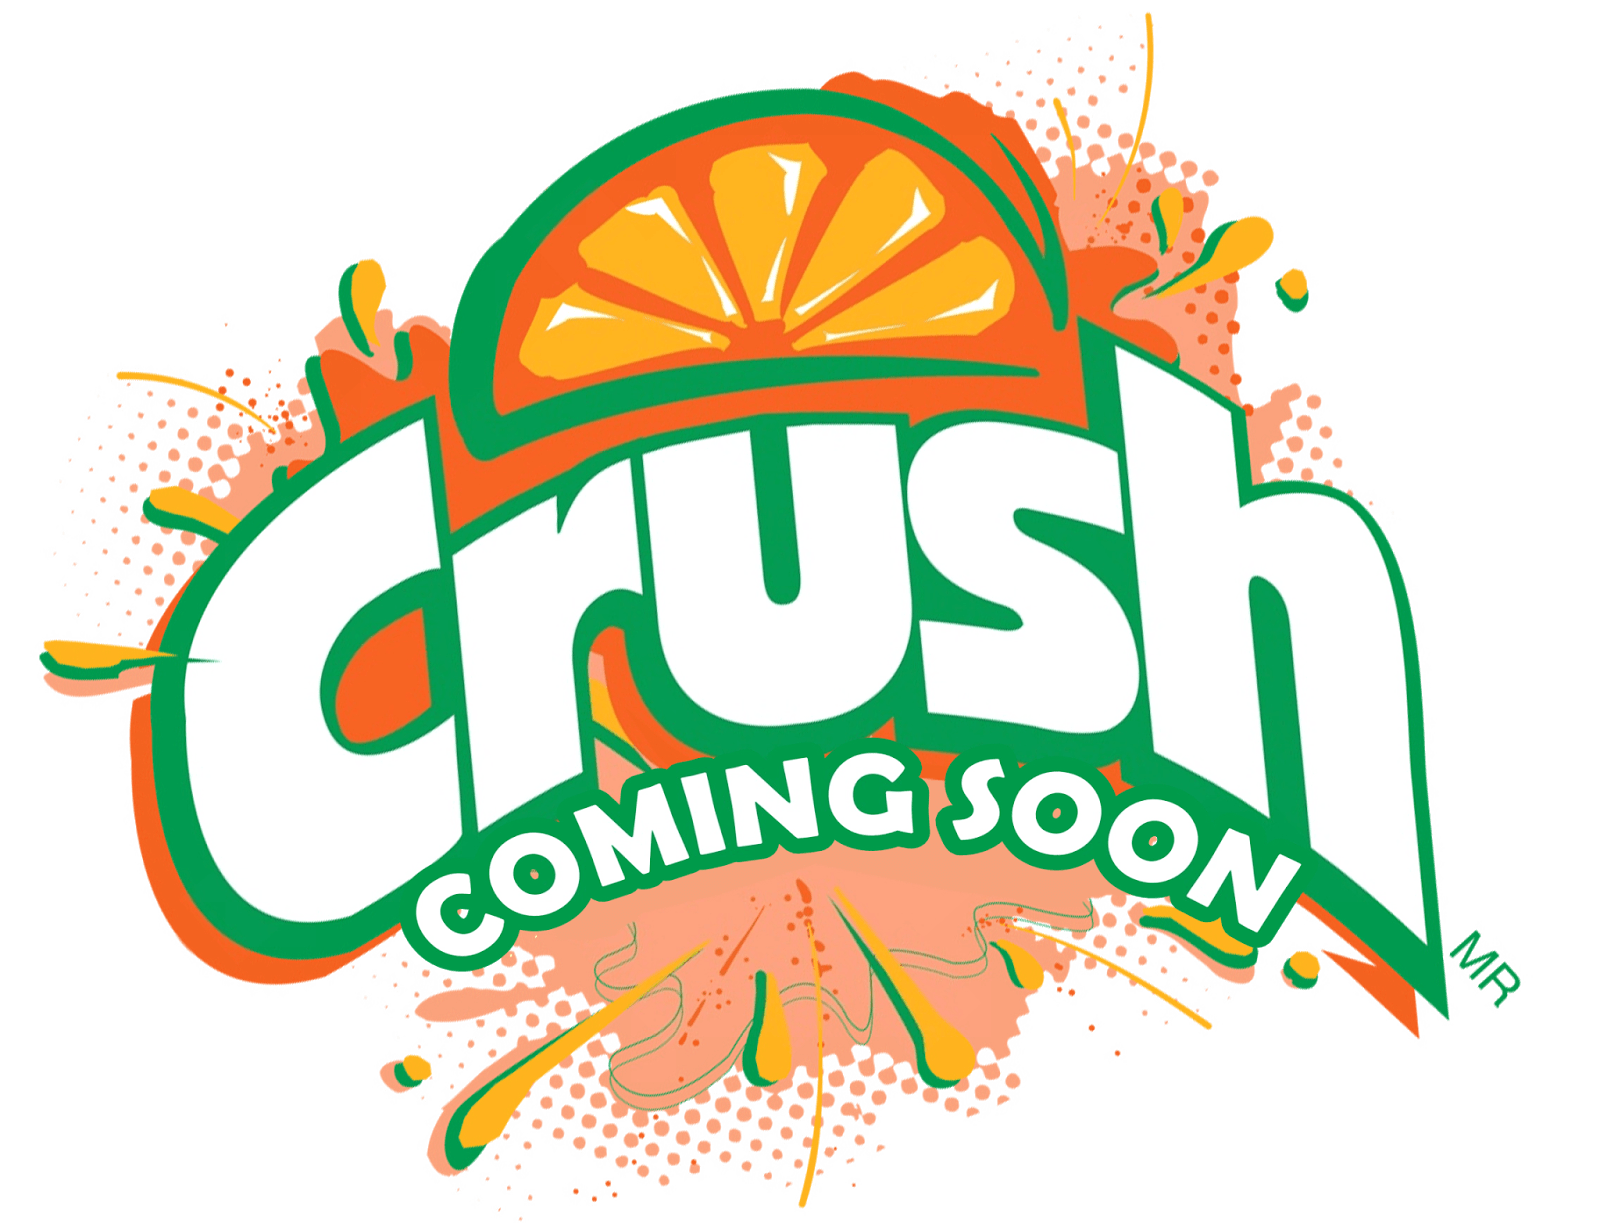 Orange Crush Logo - Orange Crush Coming Soon Logo. Logos Of Interest. Logos, Orange